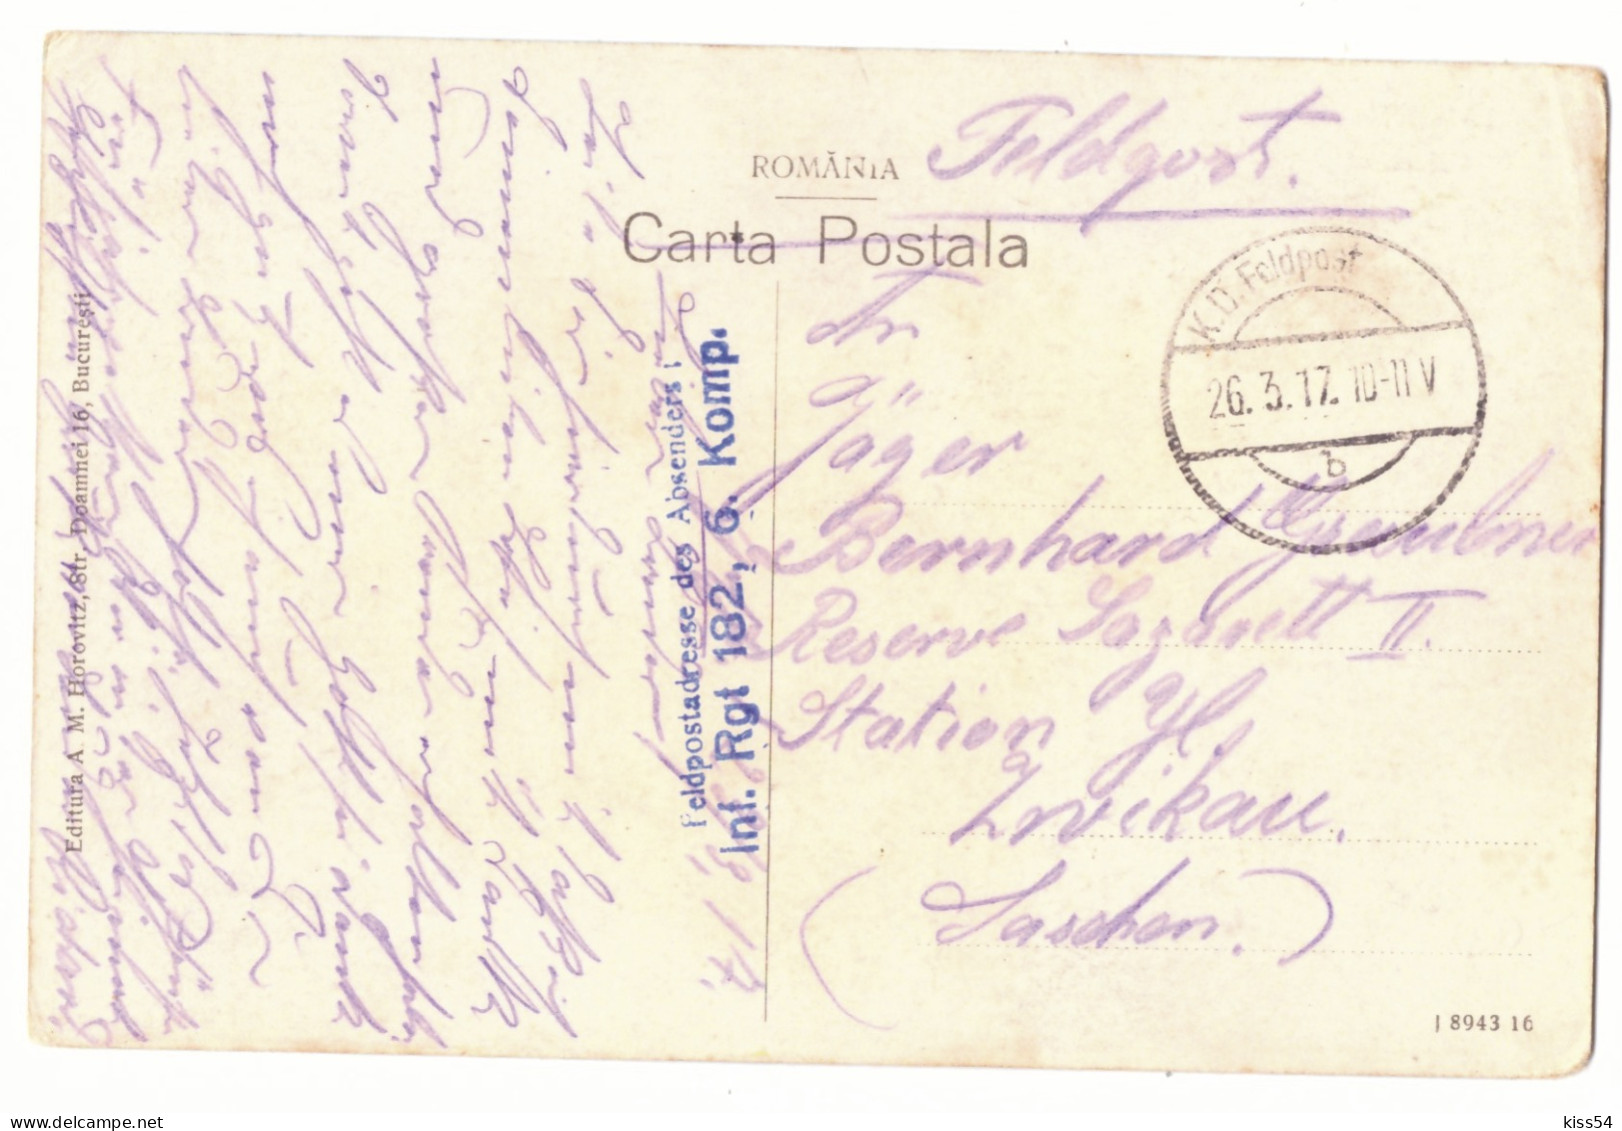 RO 52 - 19911 RM. VALCEA, Ave. Tudor Vladimirescu, Romania - Old Postcard, CENSOR - Used - 1917 - Rumania